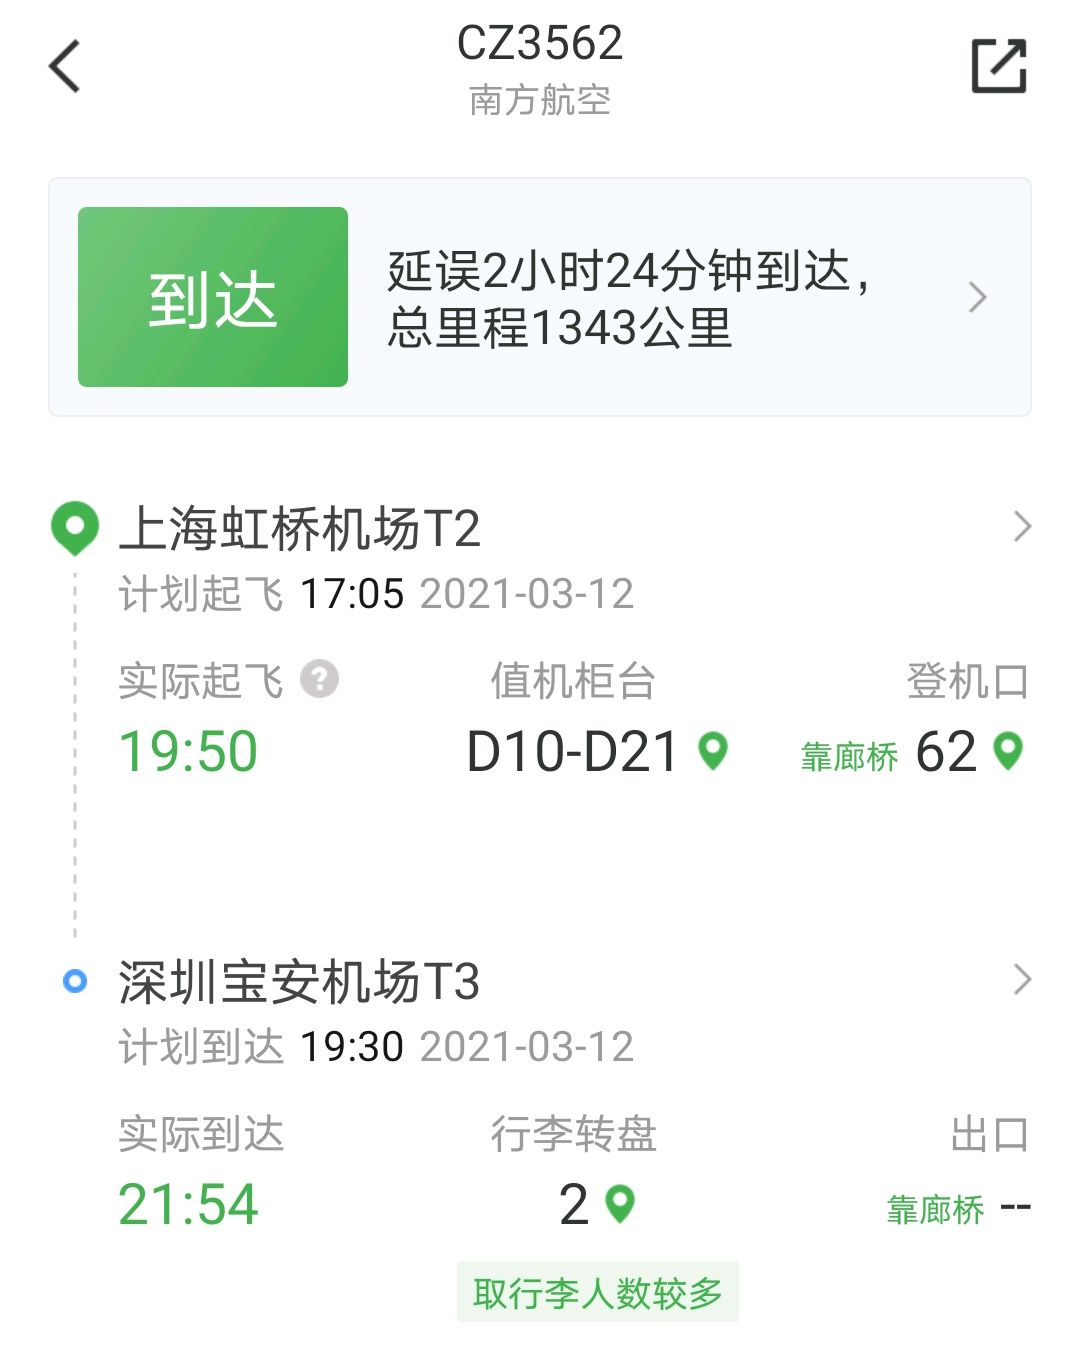 2021年3月12日上海虹桥南方航空CZ3562航班是否晚点?CZ3562